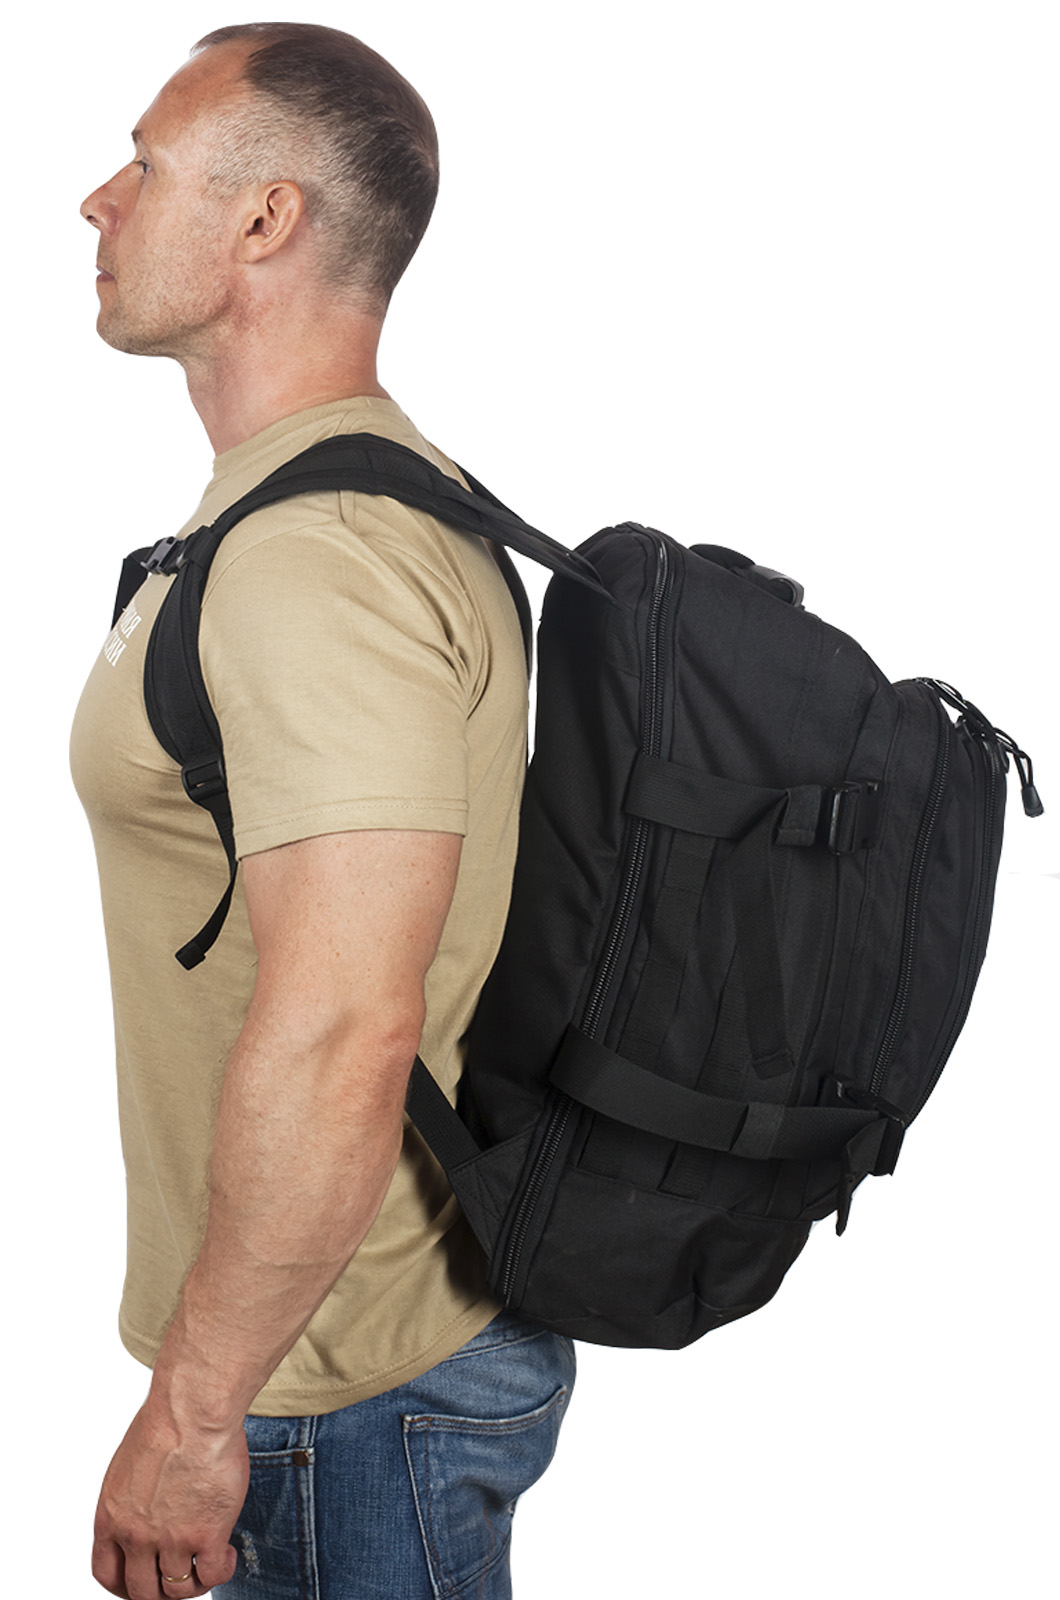 Универсальный черный рюкзак с нашивкой Потомственный Казак (40 л) 